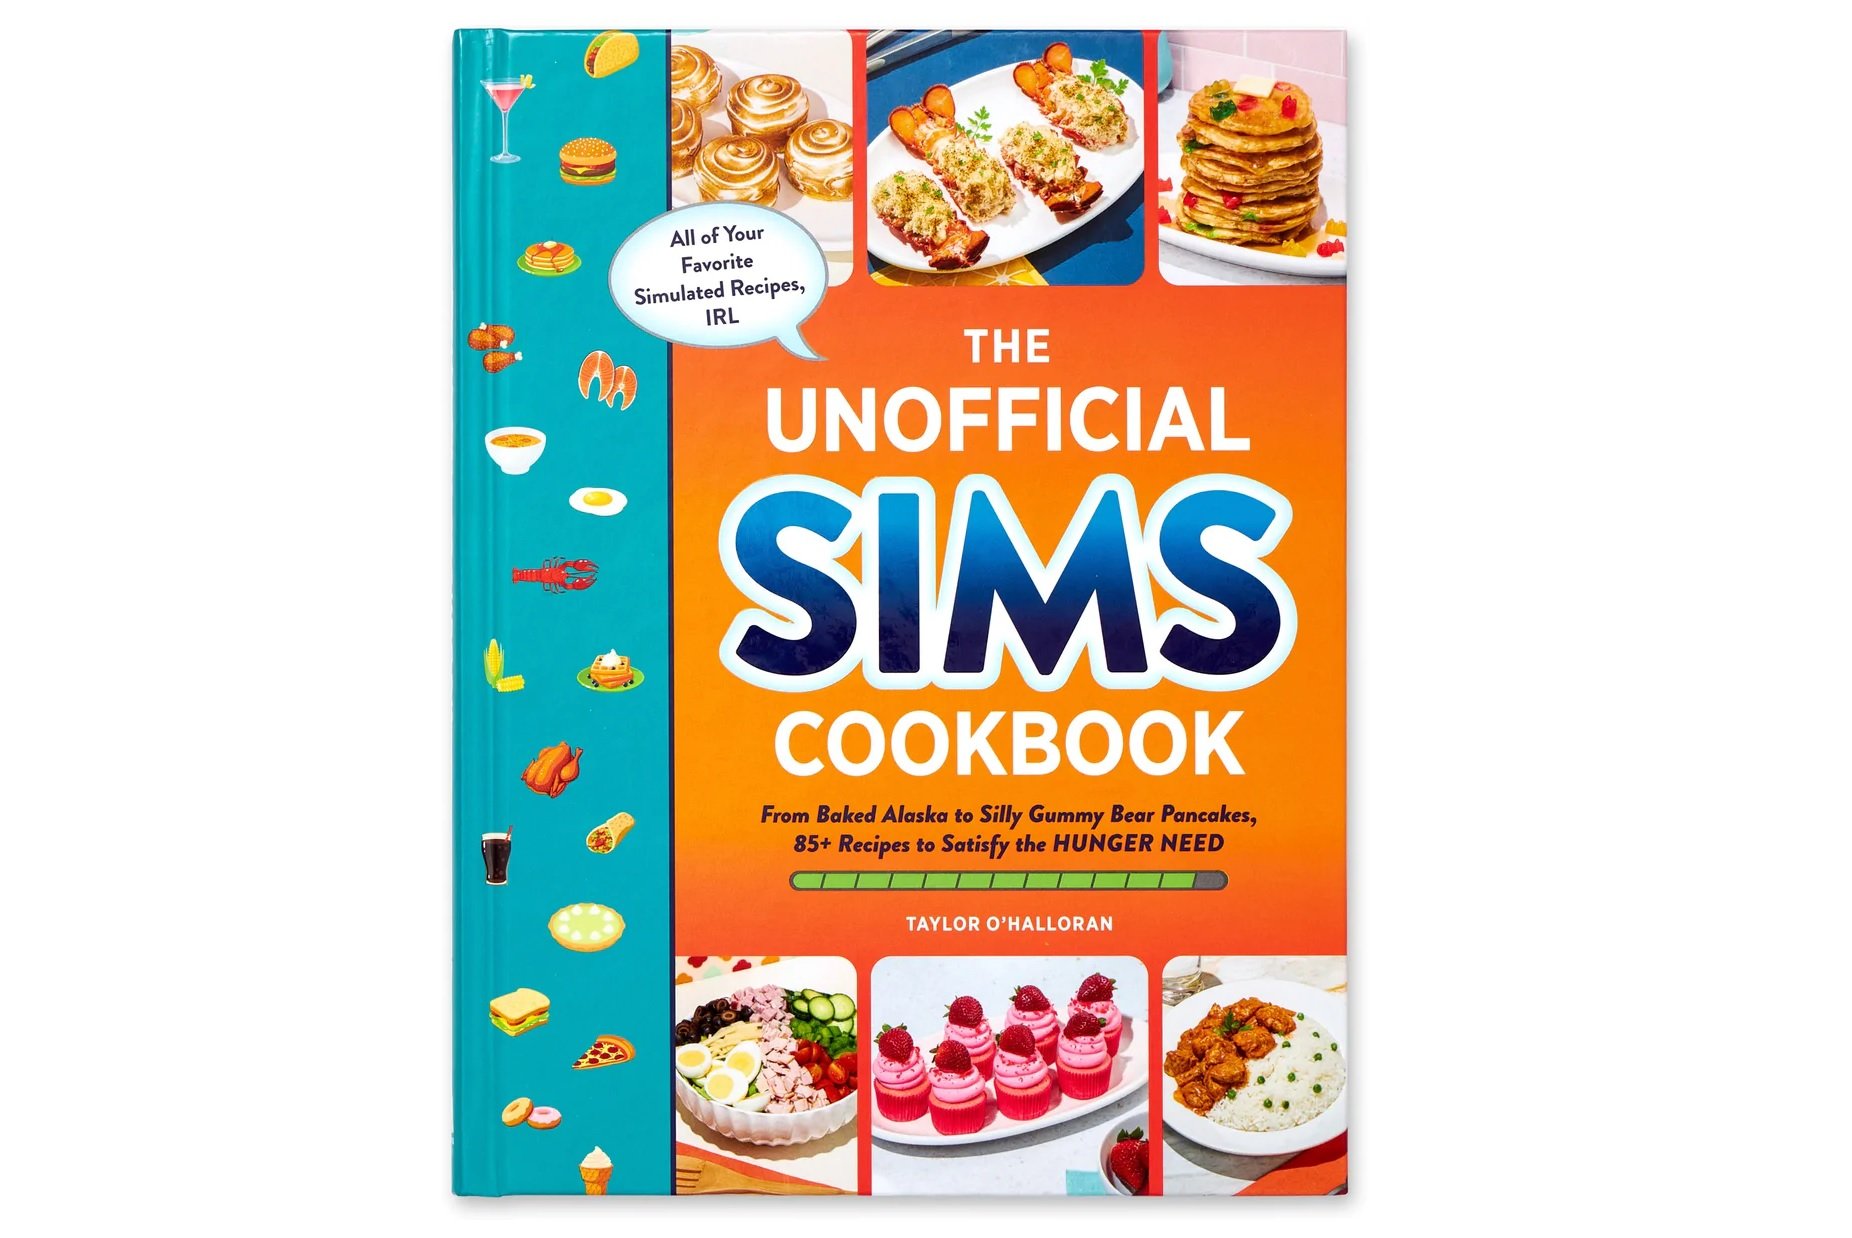 The Unofficial Sims Cookbook é um livro que traz receitas inspiradas no game The Sims